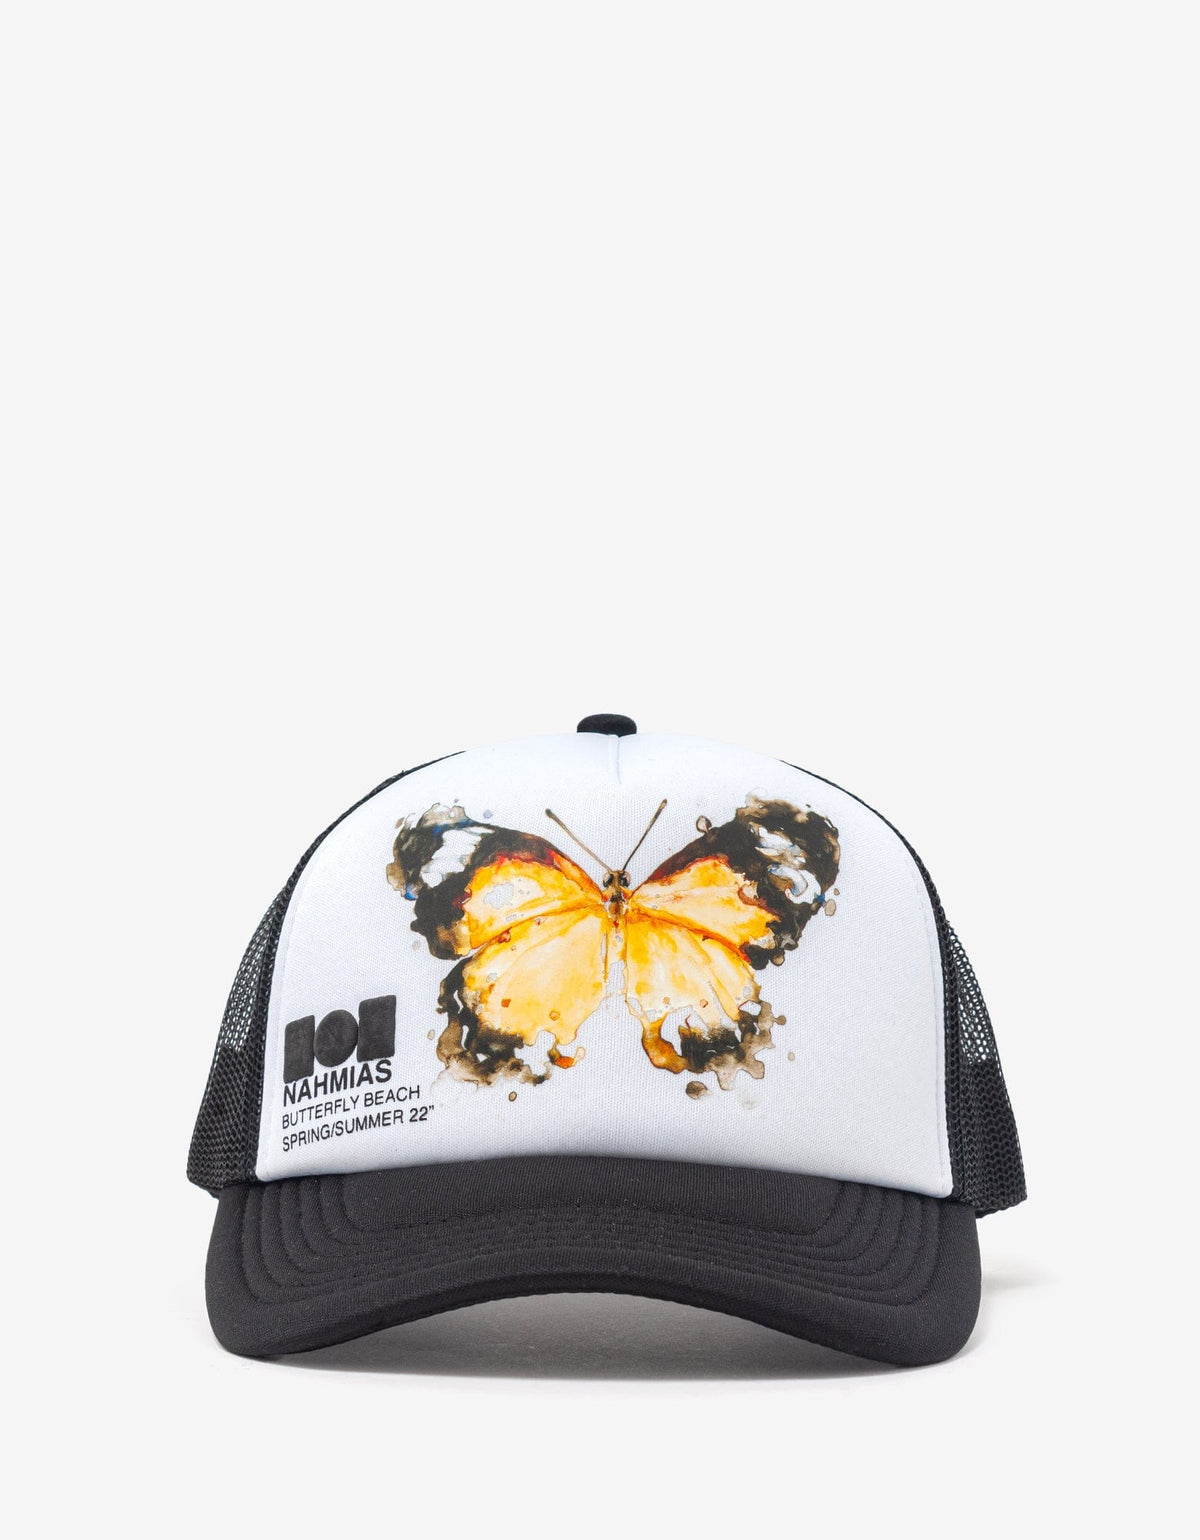 Nahmias Black Butterfly Beach Trucker Hat